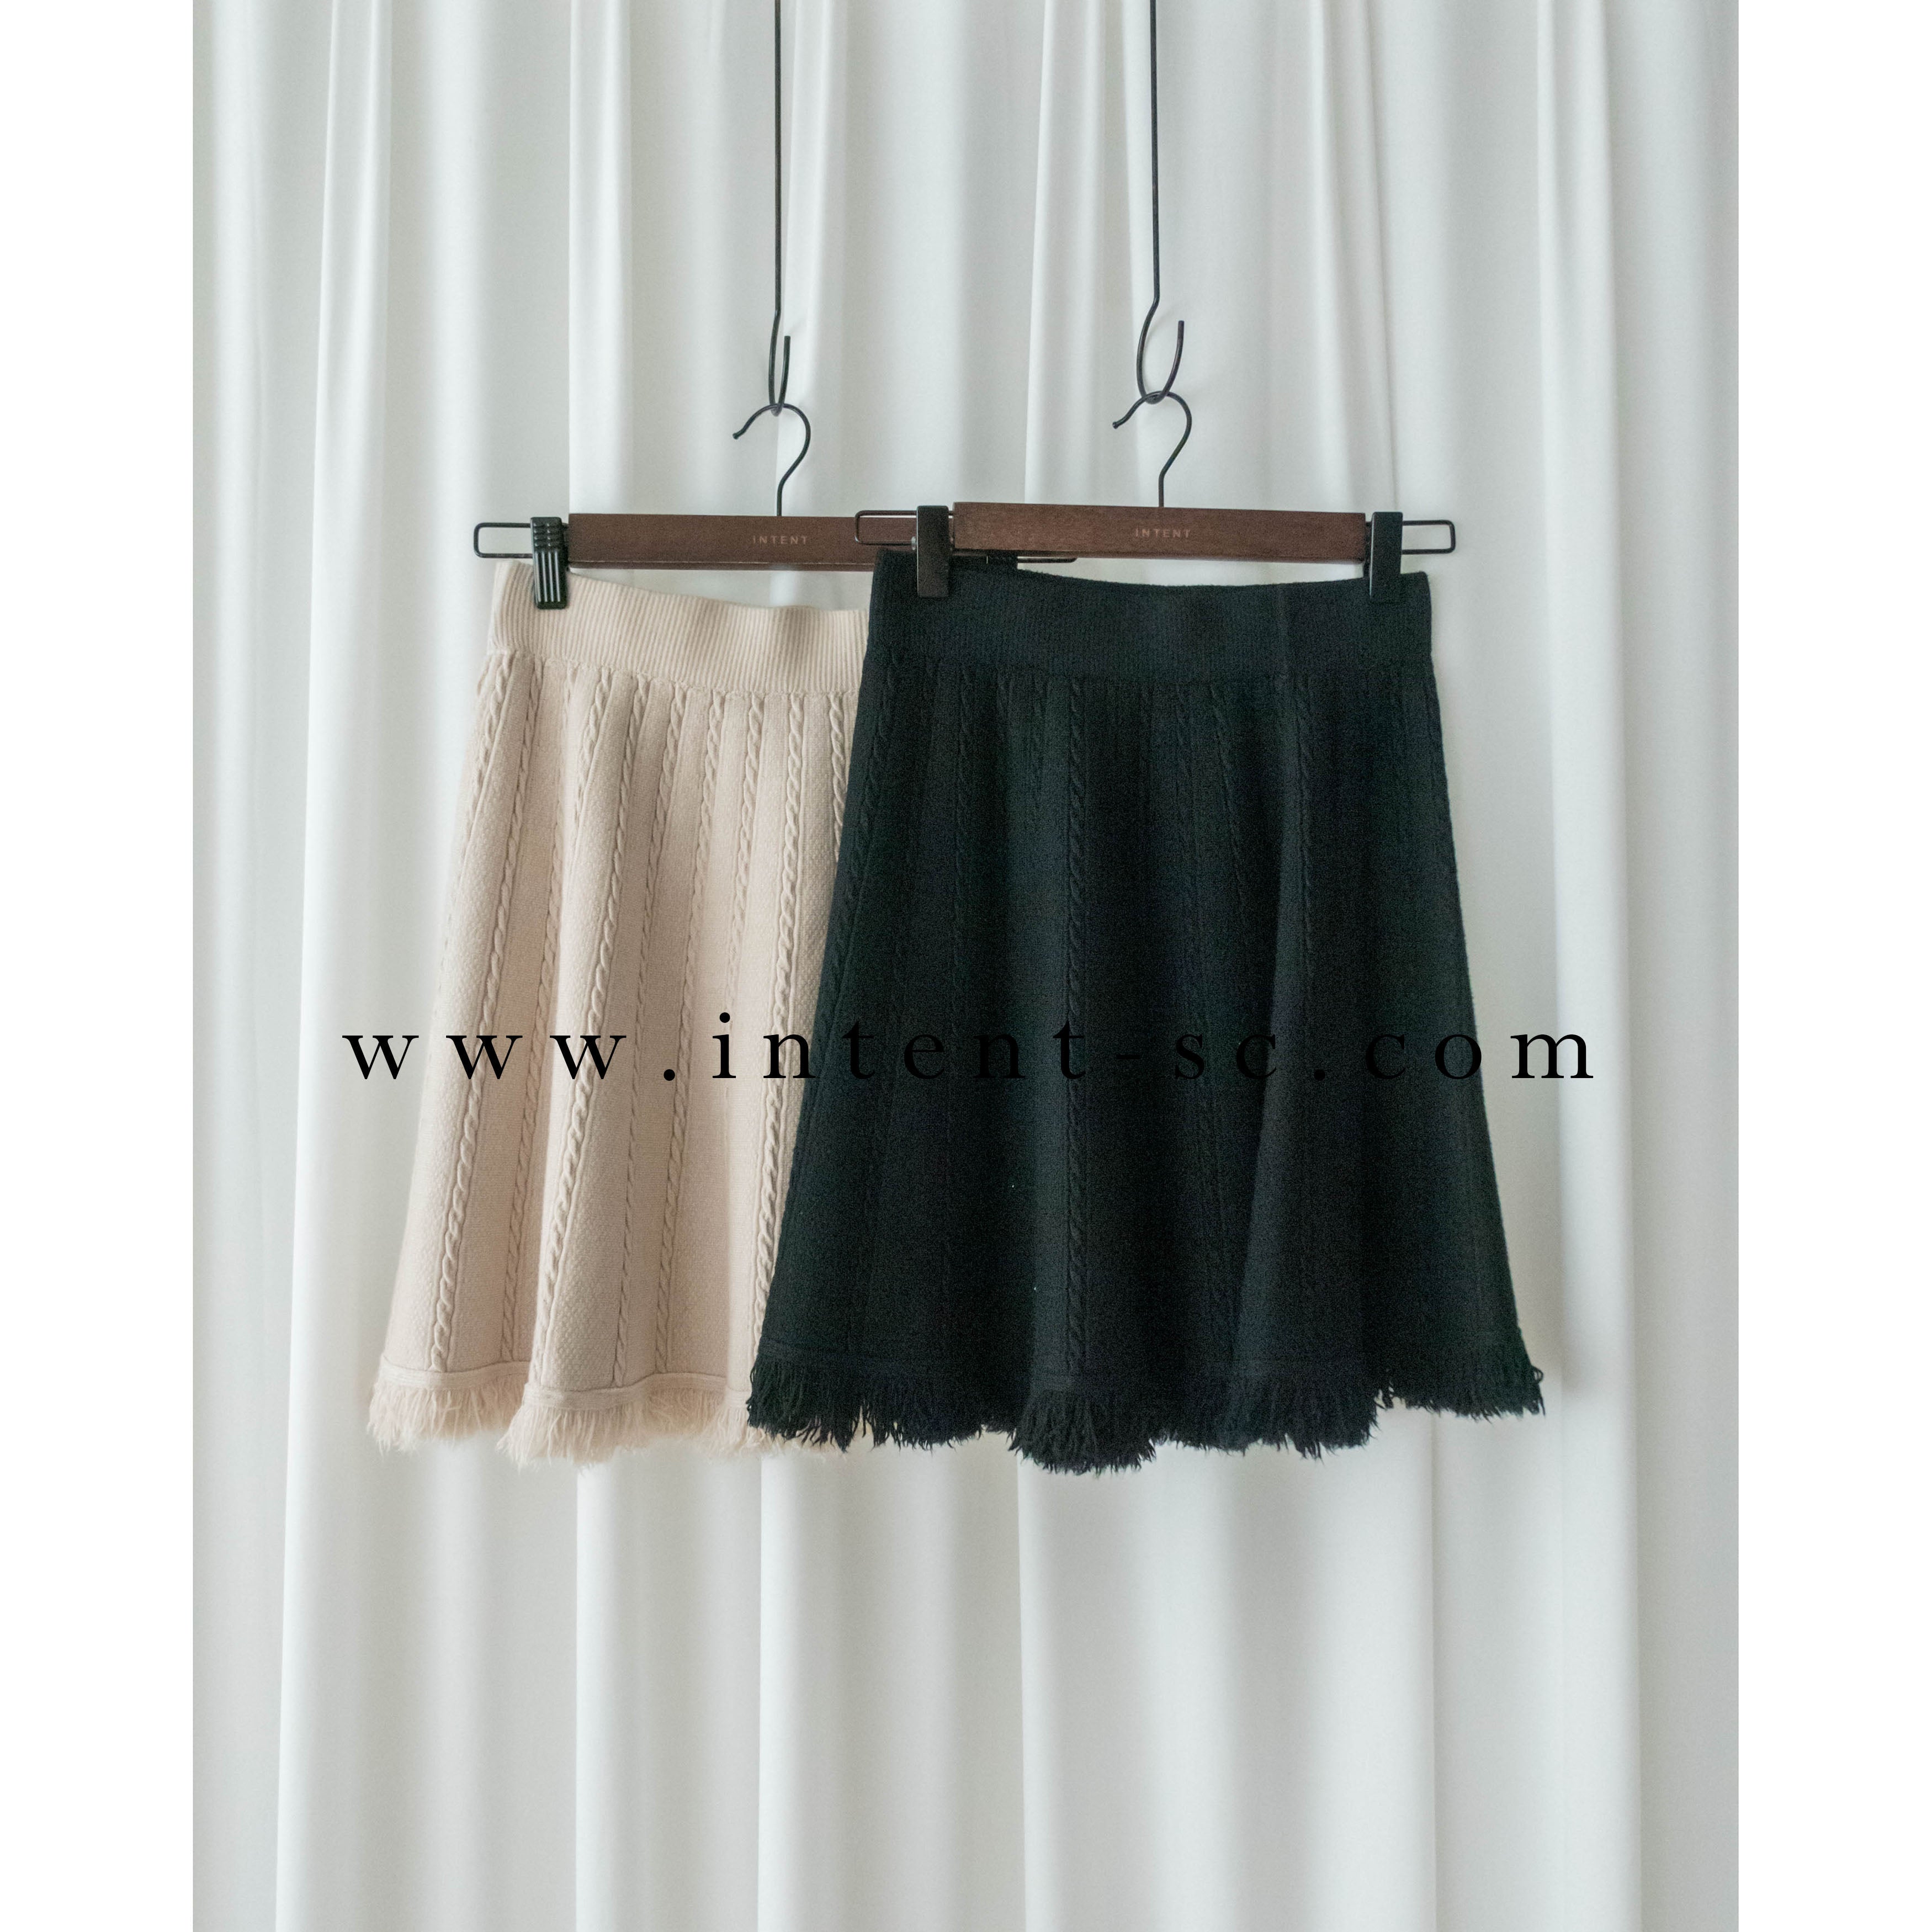 Knit Braid 全彈性扭麻花流蘇冷針裙, Skirt/ SK8768 (Ivory soldout)